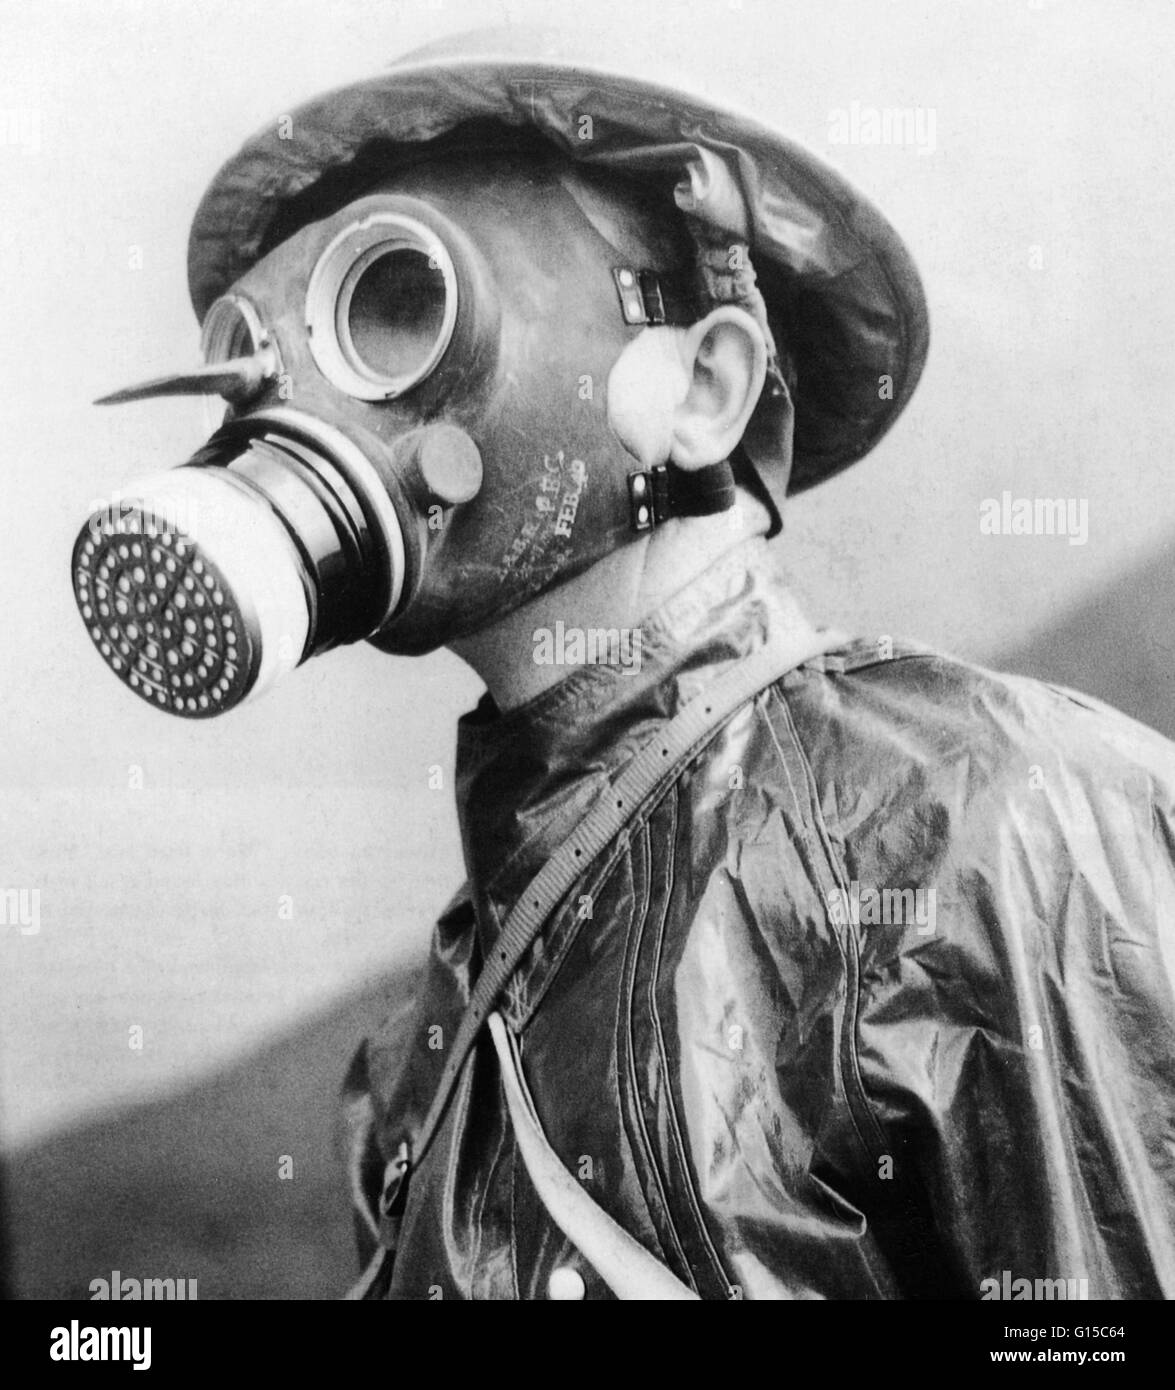 Soldat britannique portant un masque à gaz et de protection appropriées en 1940, pendant la seconde guerre mondiale. Banque D'Images